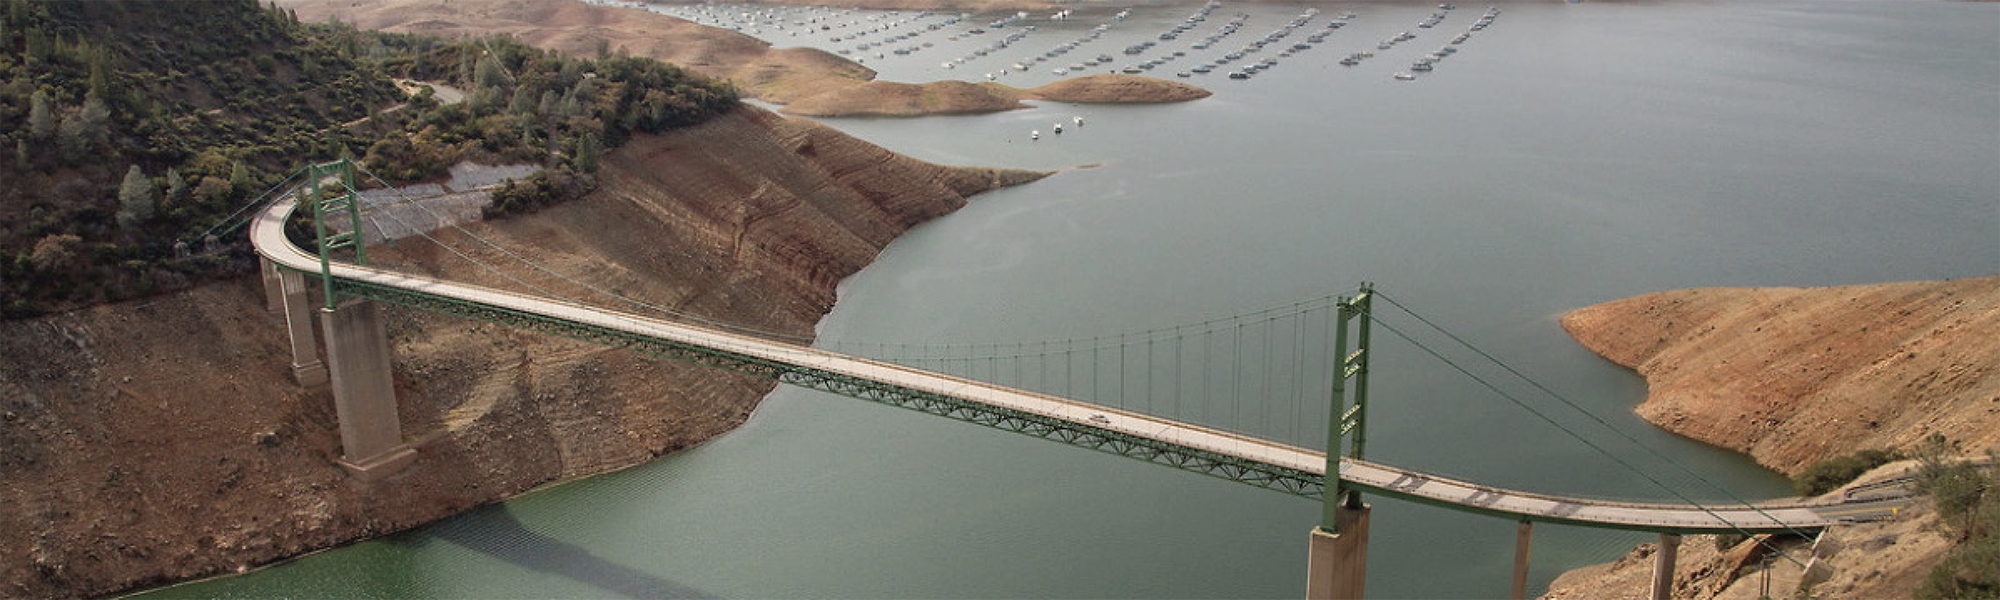 Ecolabs Standort in der City of Industry (Kalifornien) als führend in der Wasserverwaltung zertifiziert